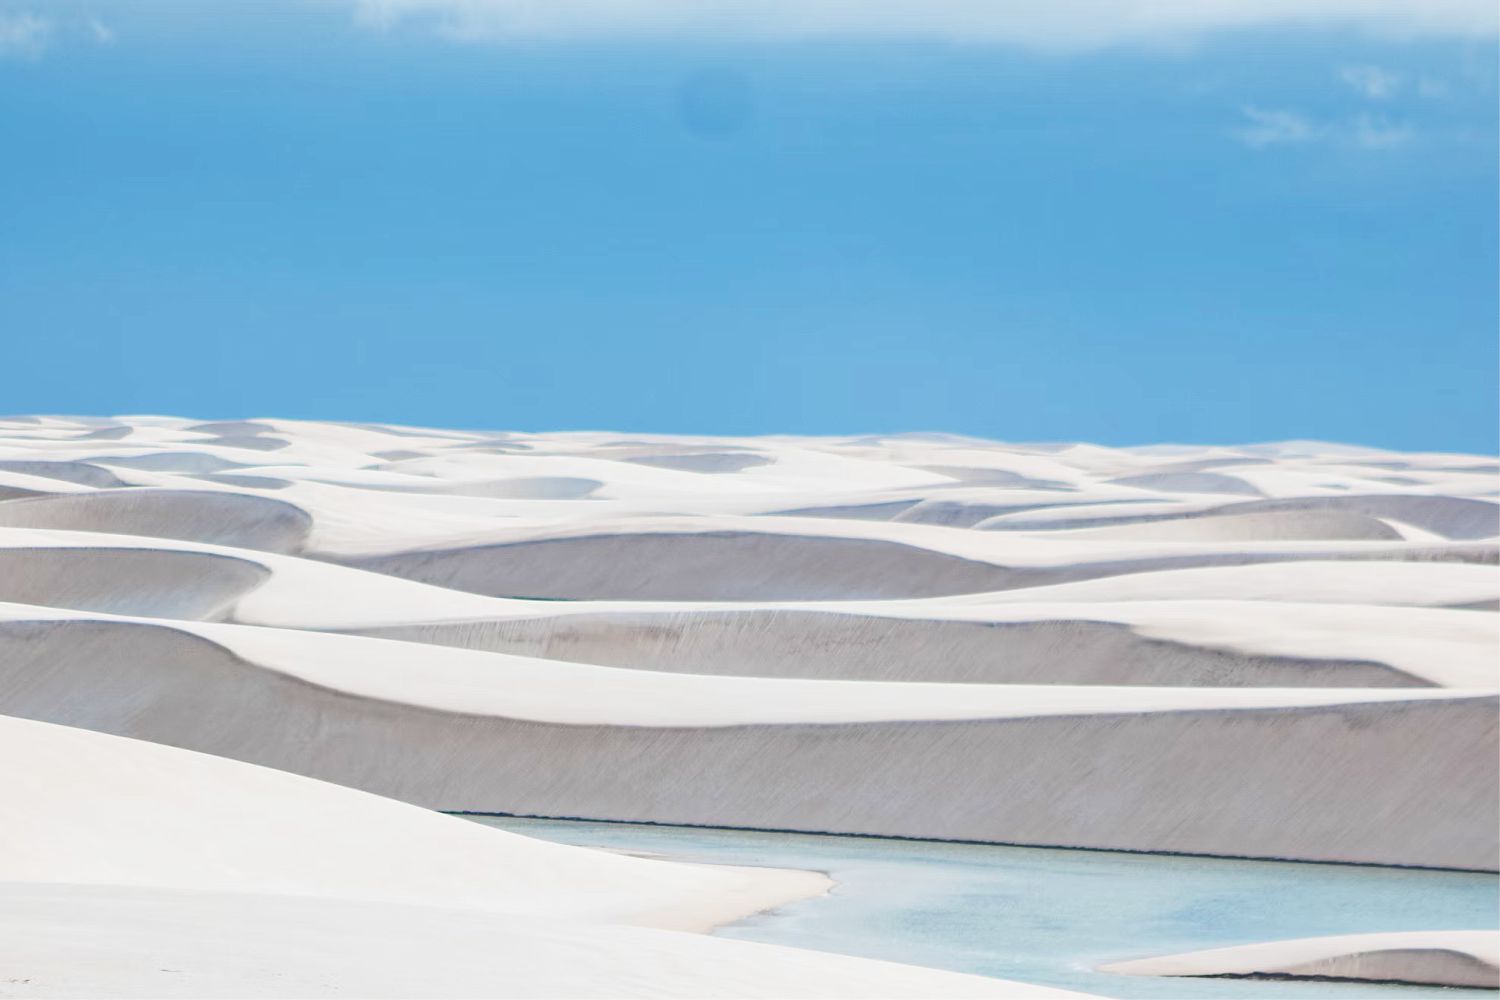 Lencois Maranhenses - khám phá vẻ mê hoặc của hàng trăm hồ nước xanh ngọc giữa sa mạc - Ảnh 2.